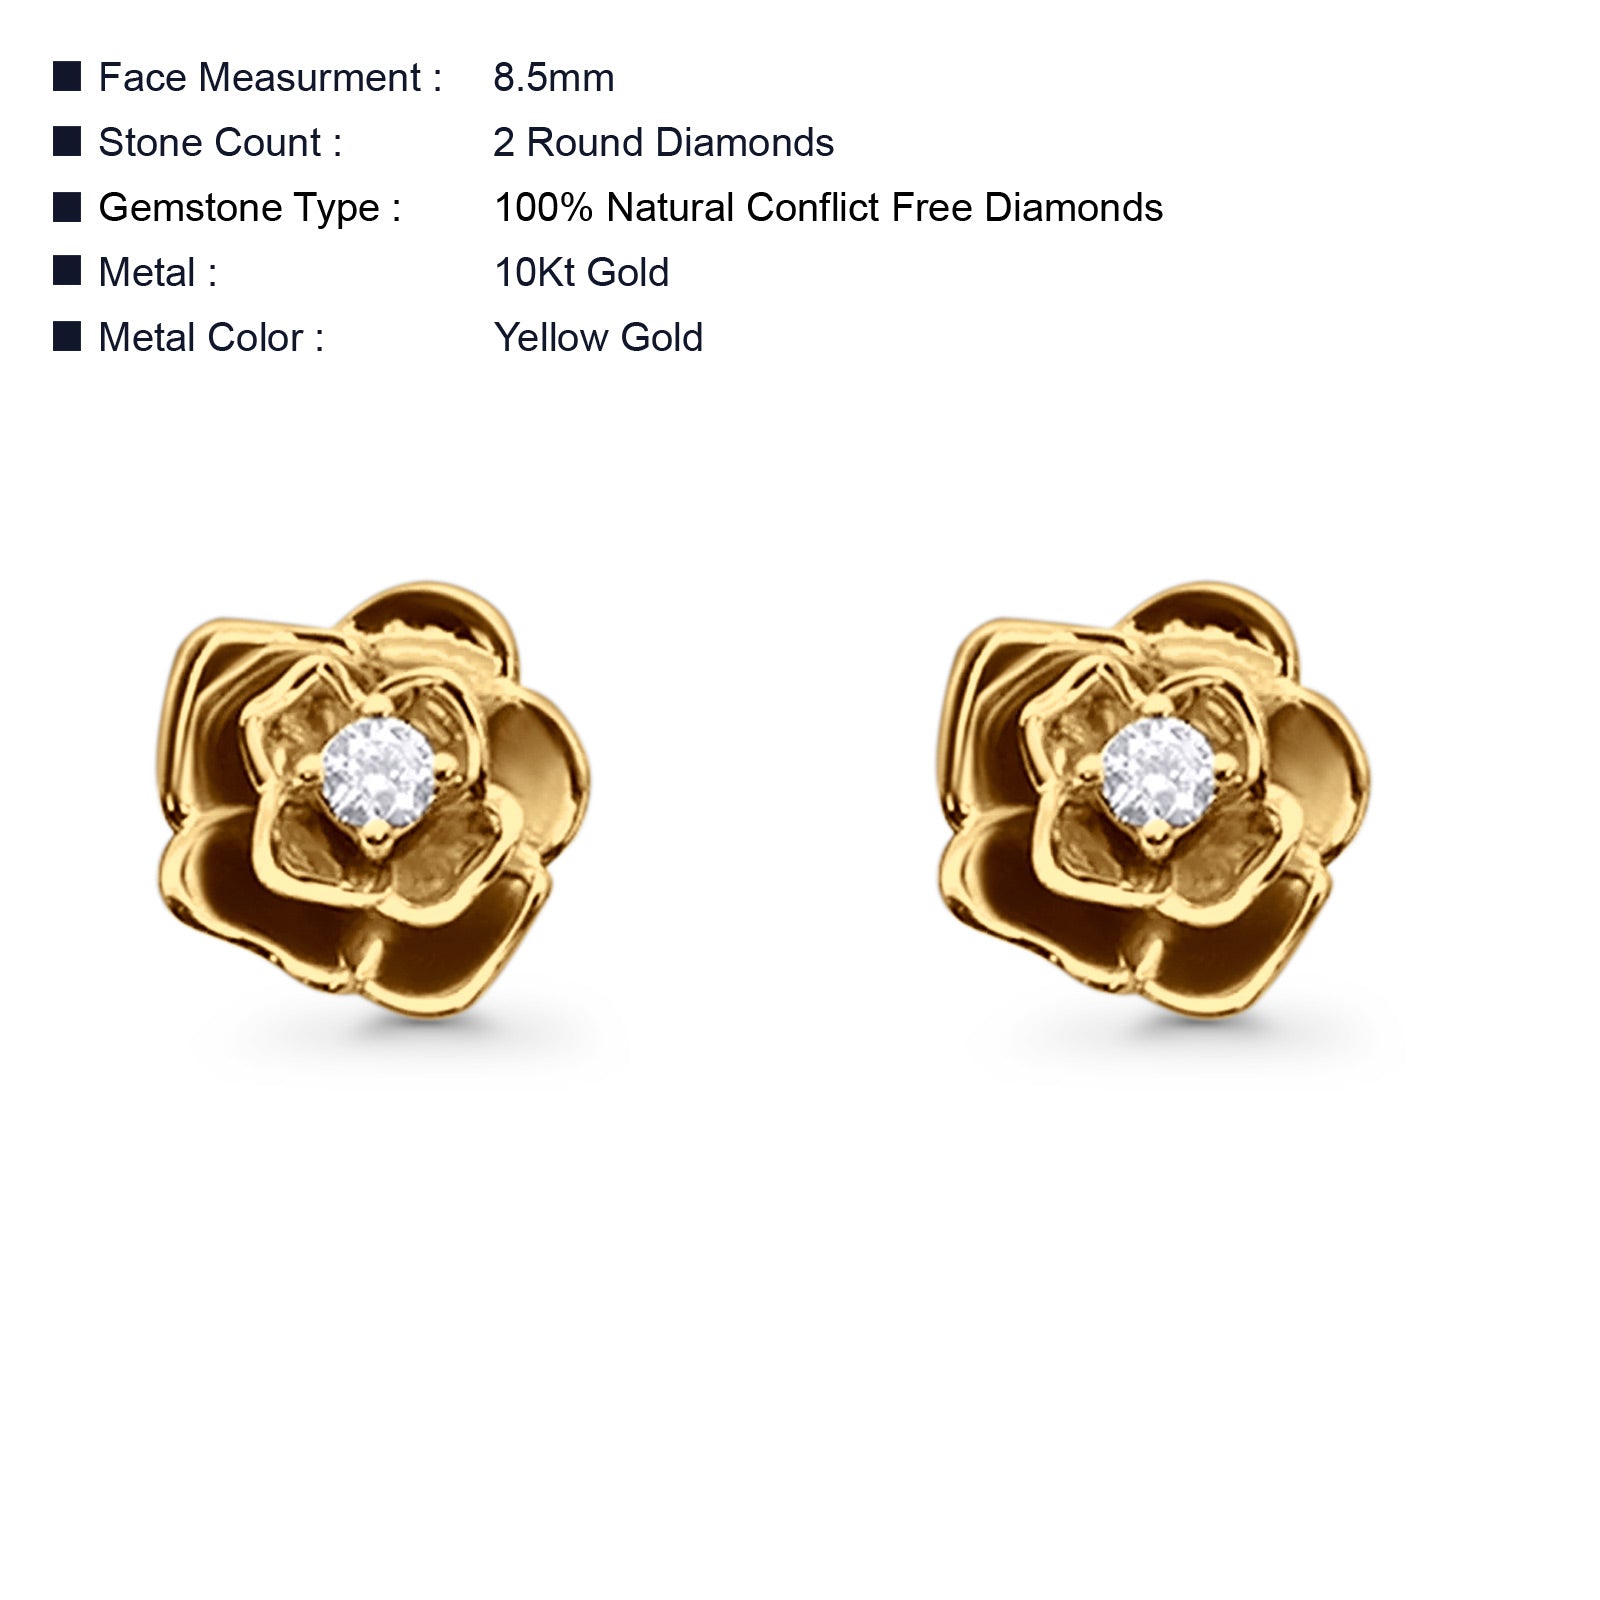 Solid 10K Gold 8.5mm Floral Minimalist Diamond Stud Earrings